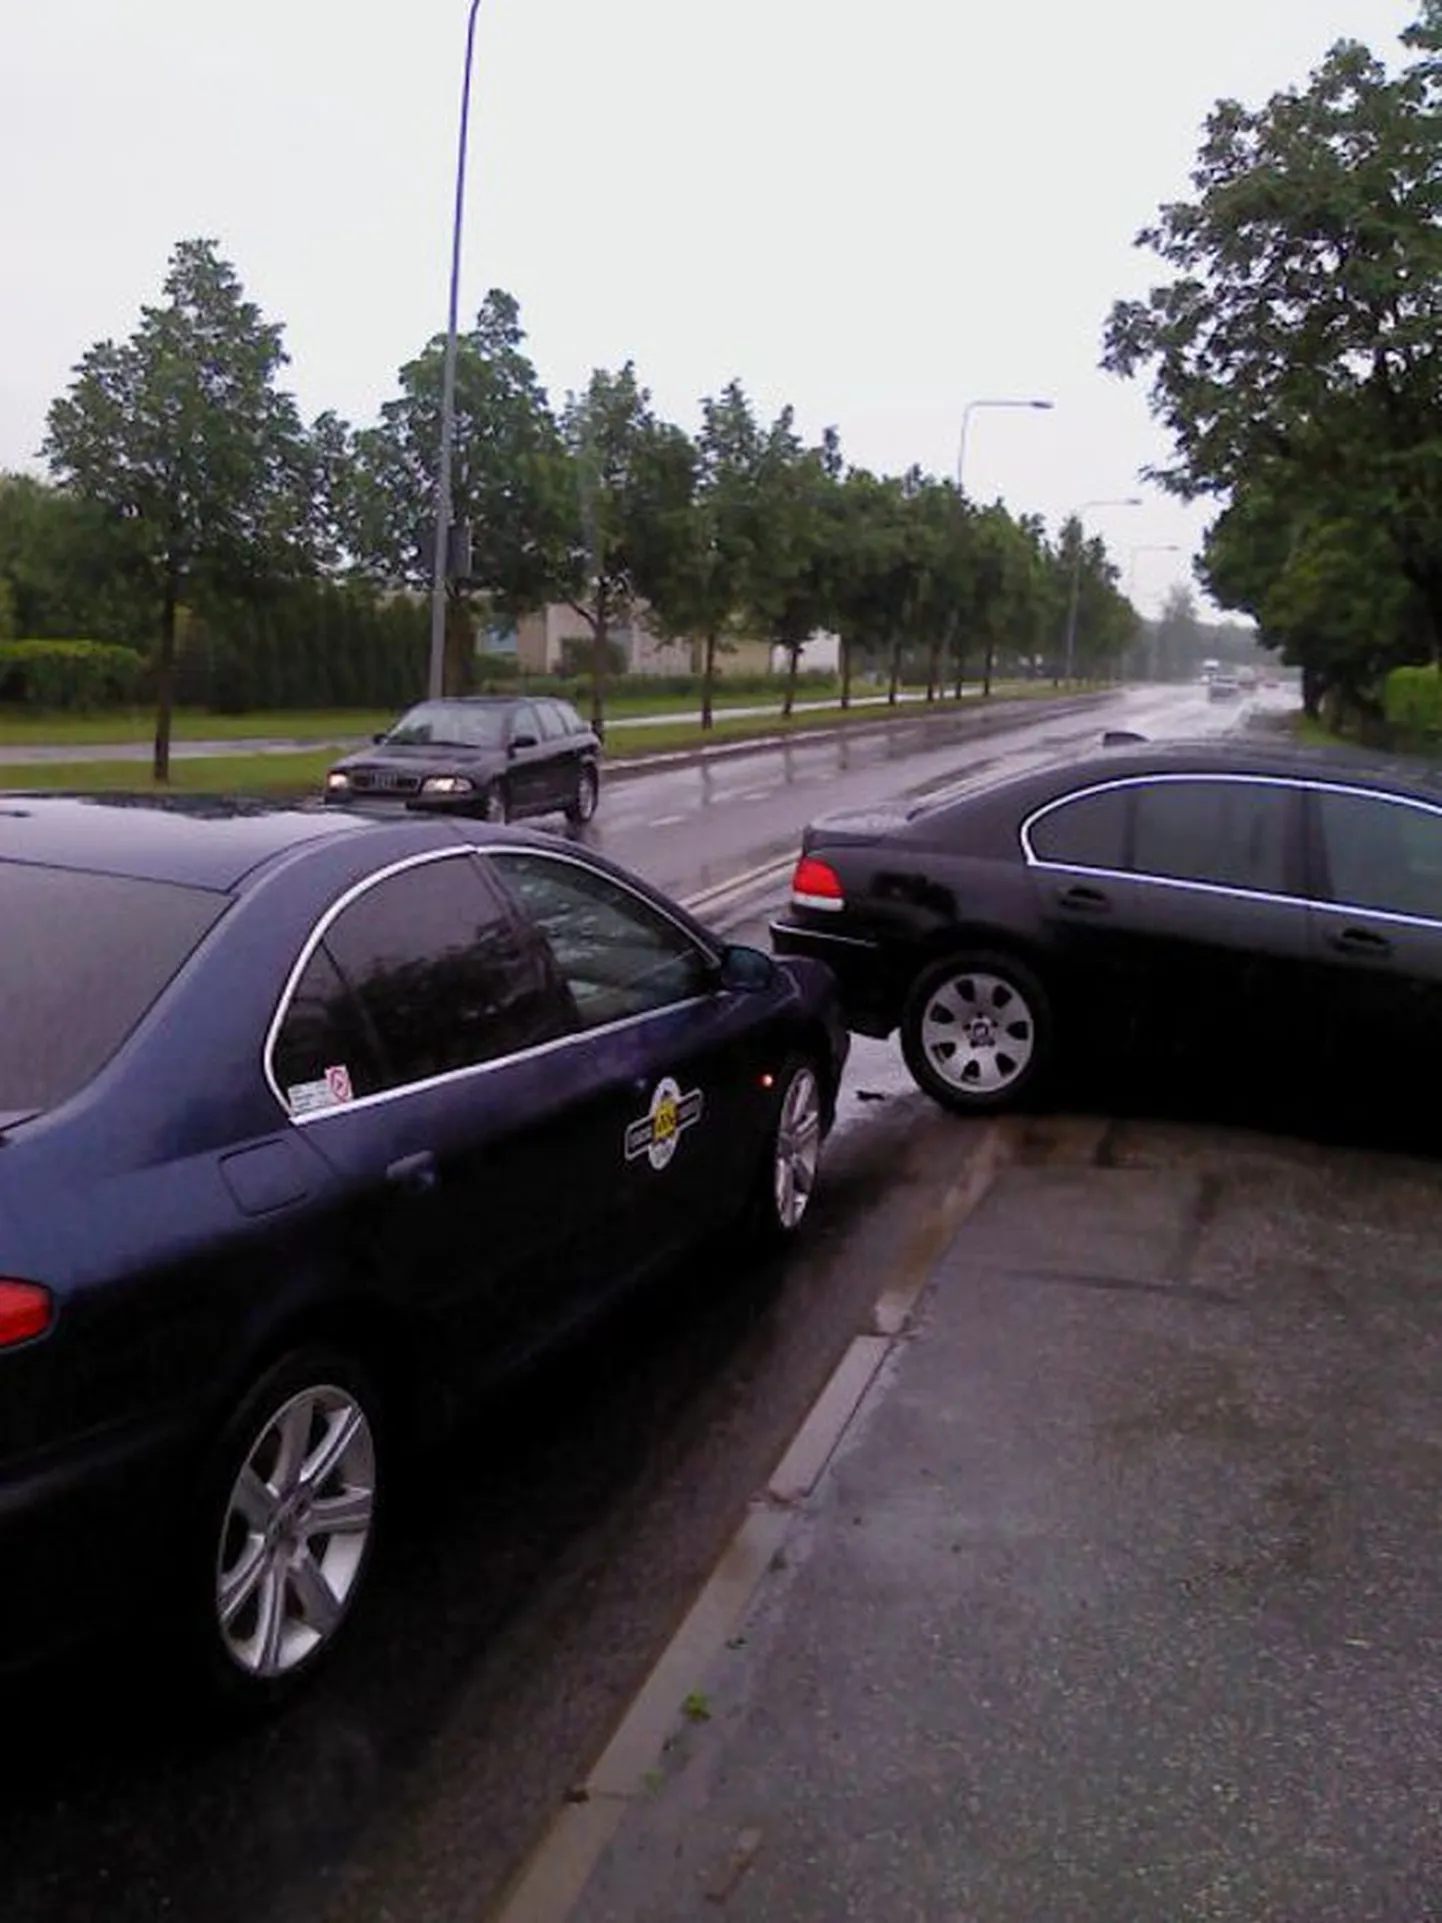 9. juuni pärastlõunal kella 14.50 ajal juhtus liiklusõnnetus Tartus Jaama tänaval, kus parempööret sooritanud sõiduautole BMW sõitis tagant otsa sõiduauto Peugeot.